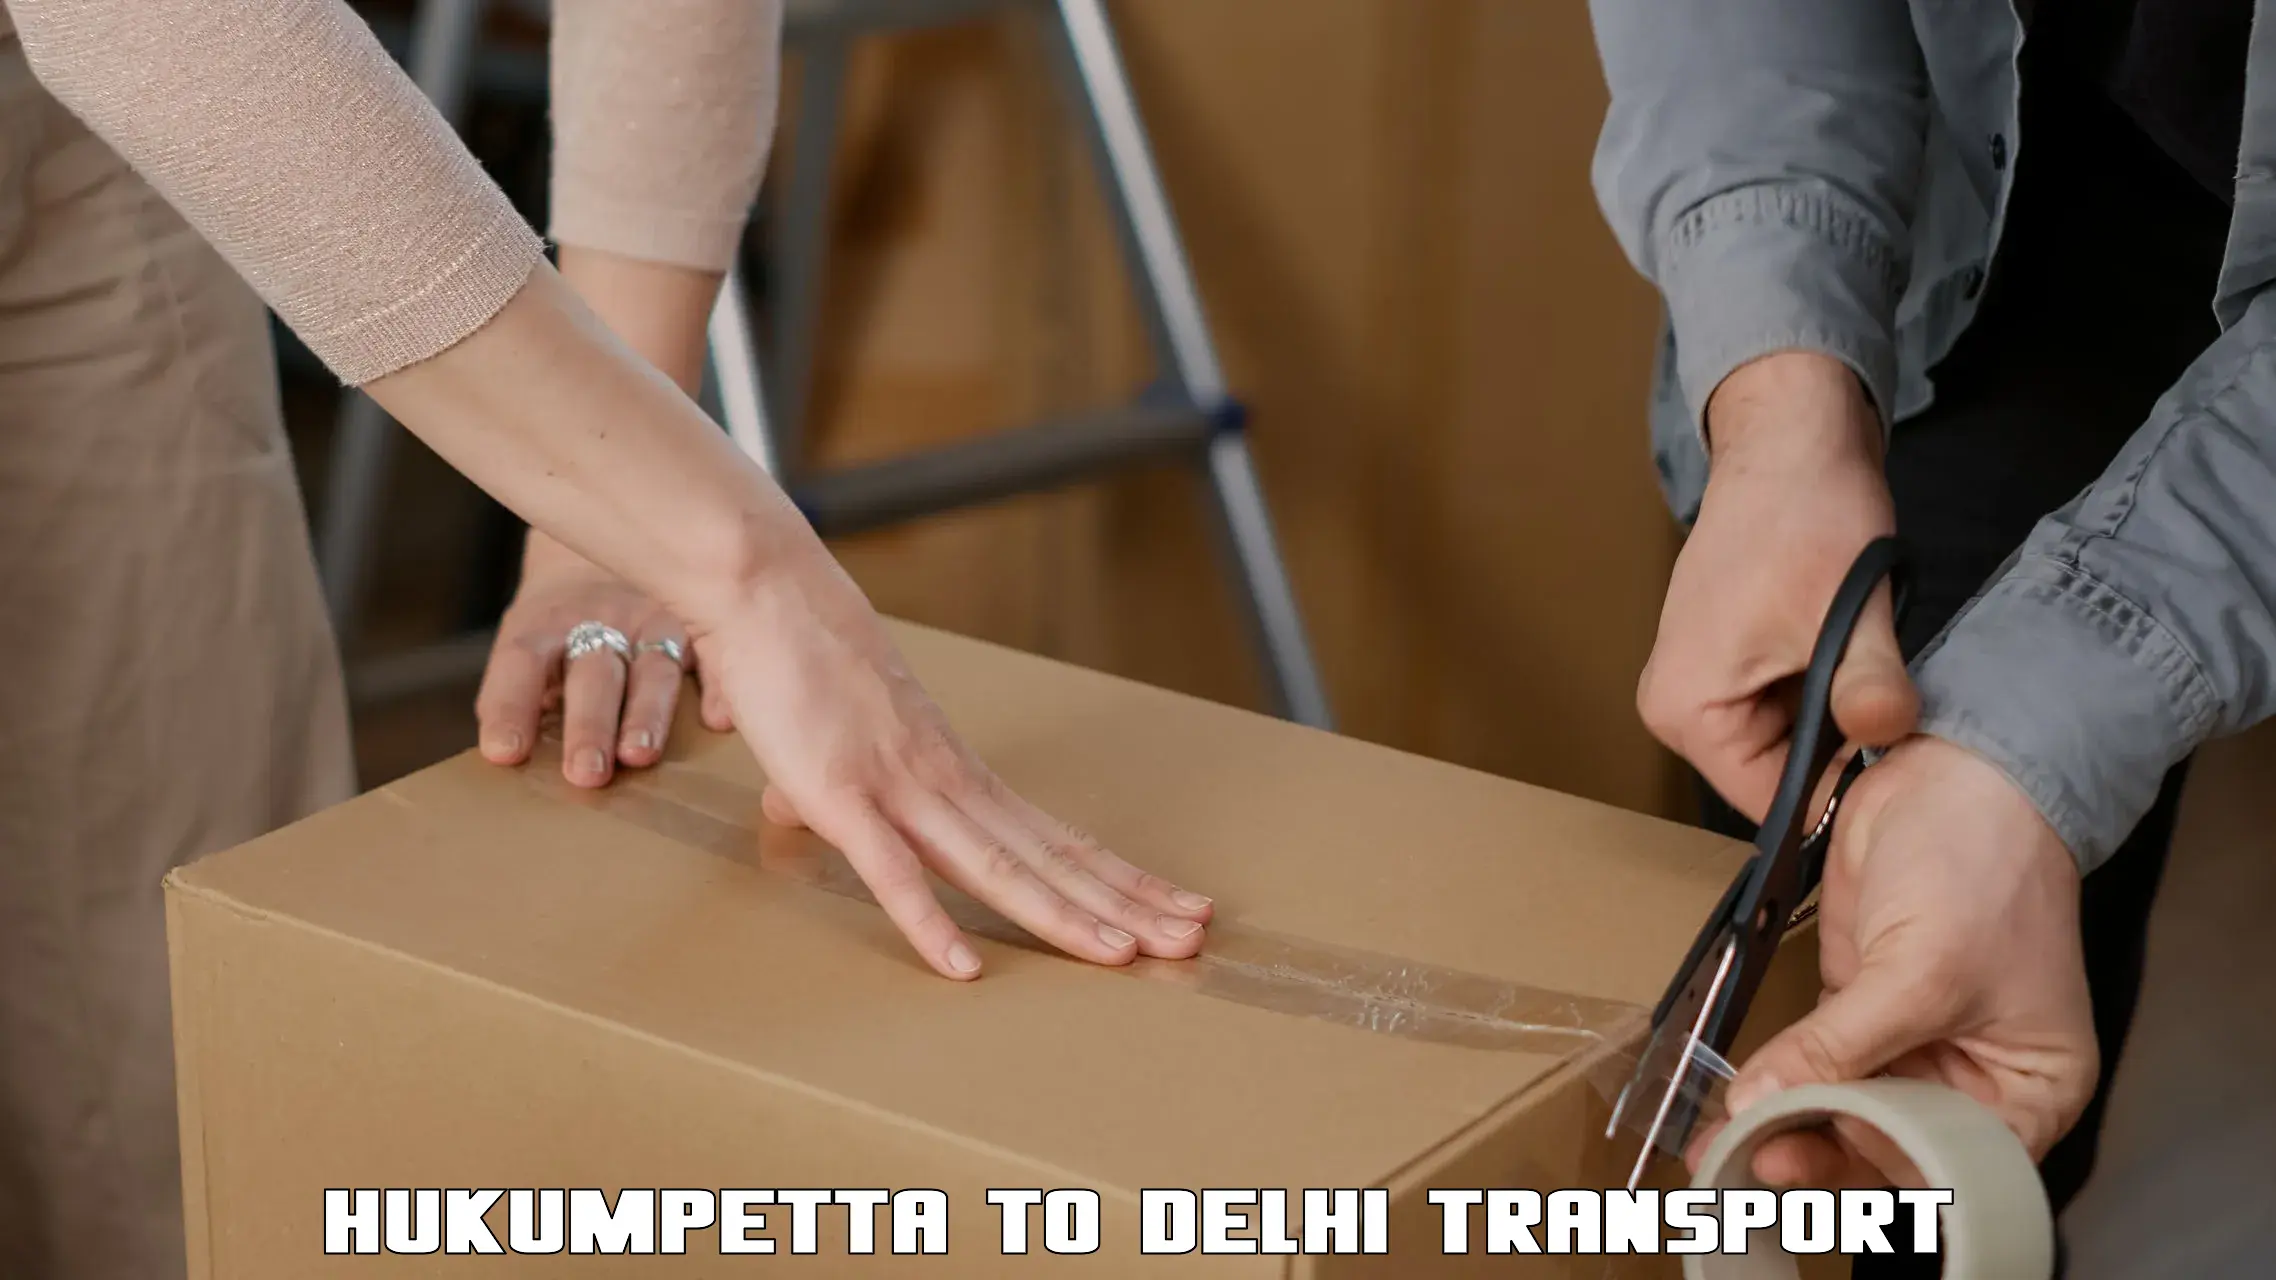 Cargo transportation services Hukumpetta to East Delhi